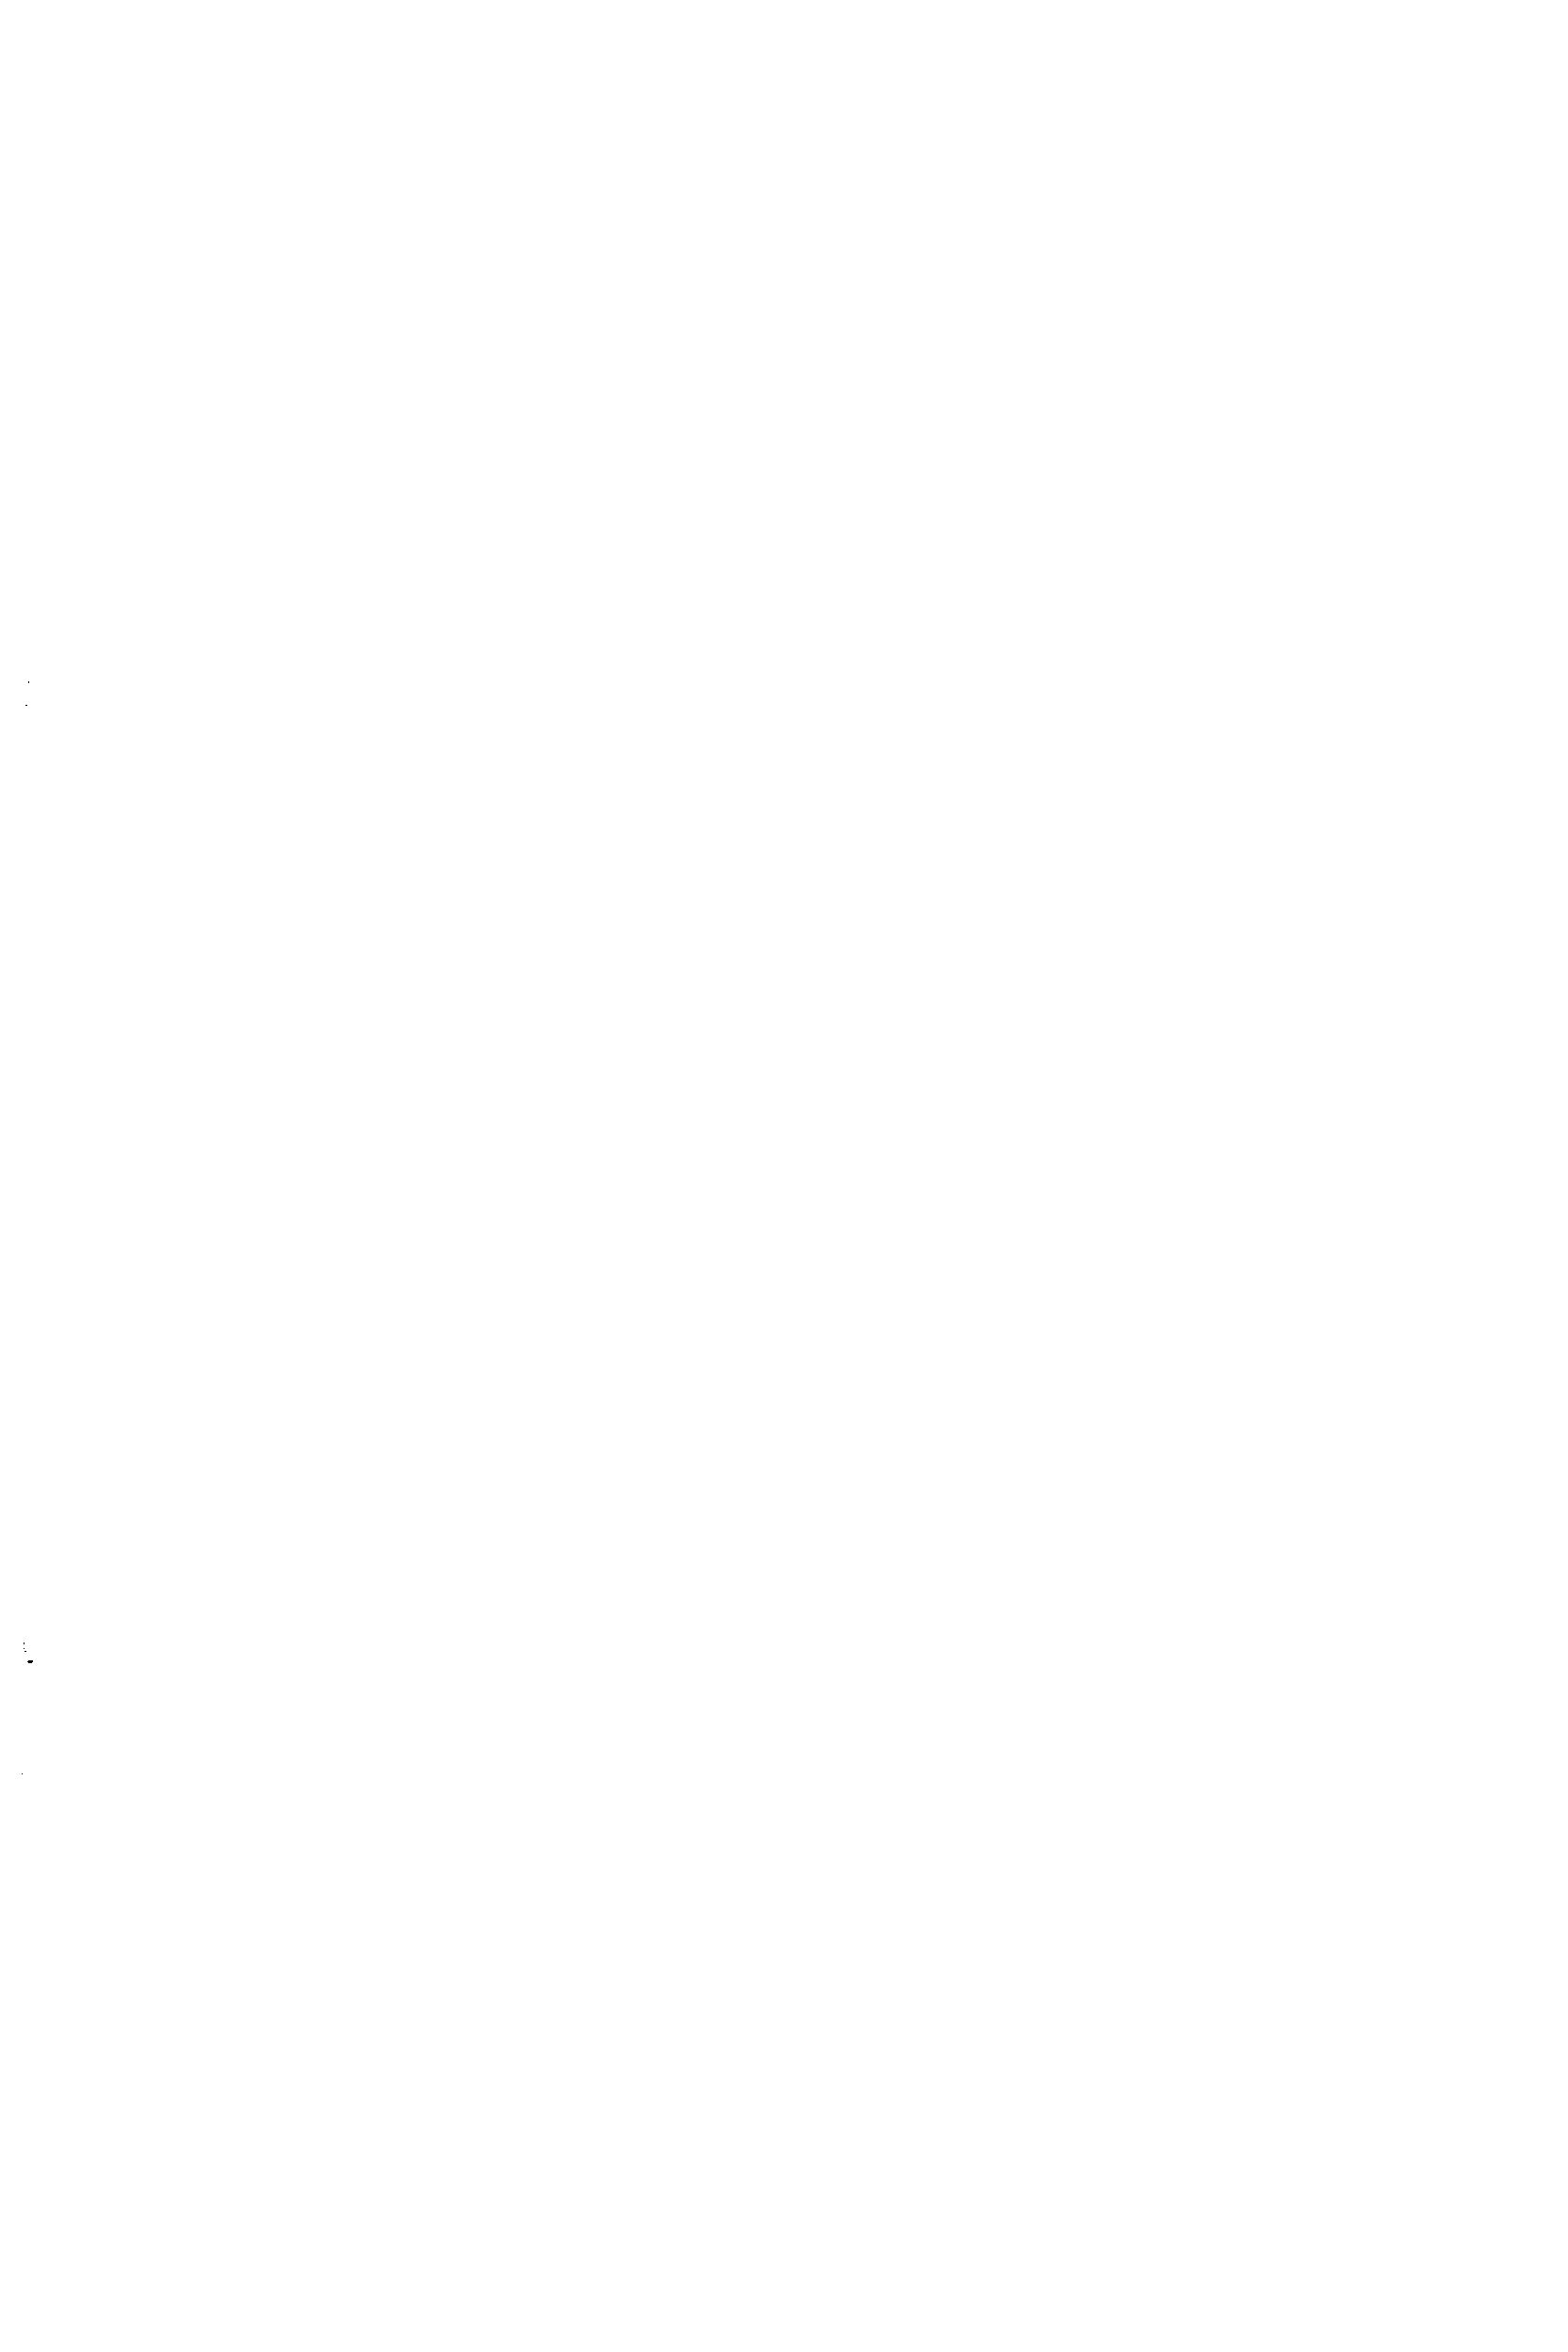 Рис. 8.5. Конструкции люков с плоскими крышками и фланцами, приварными встык а — тип 3, с уплотнением выступ—впадина, ОСТ 26-2005—77 б — тип 4, с уплотнением шип—паз, ОСТ 26-2006—77 в — тип 5, с уплотнением под прокладку восьмиугольного сечения, ОСТ 26-2007-77 
